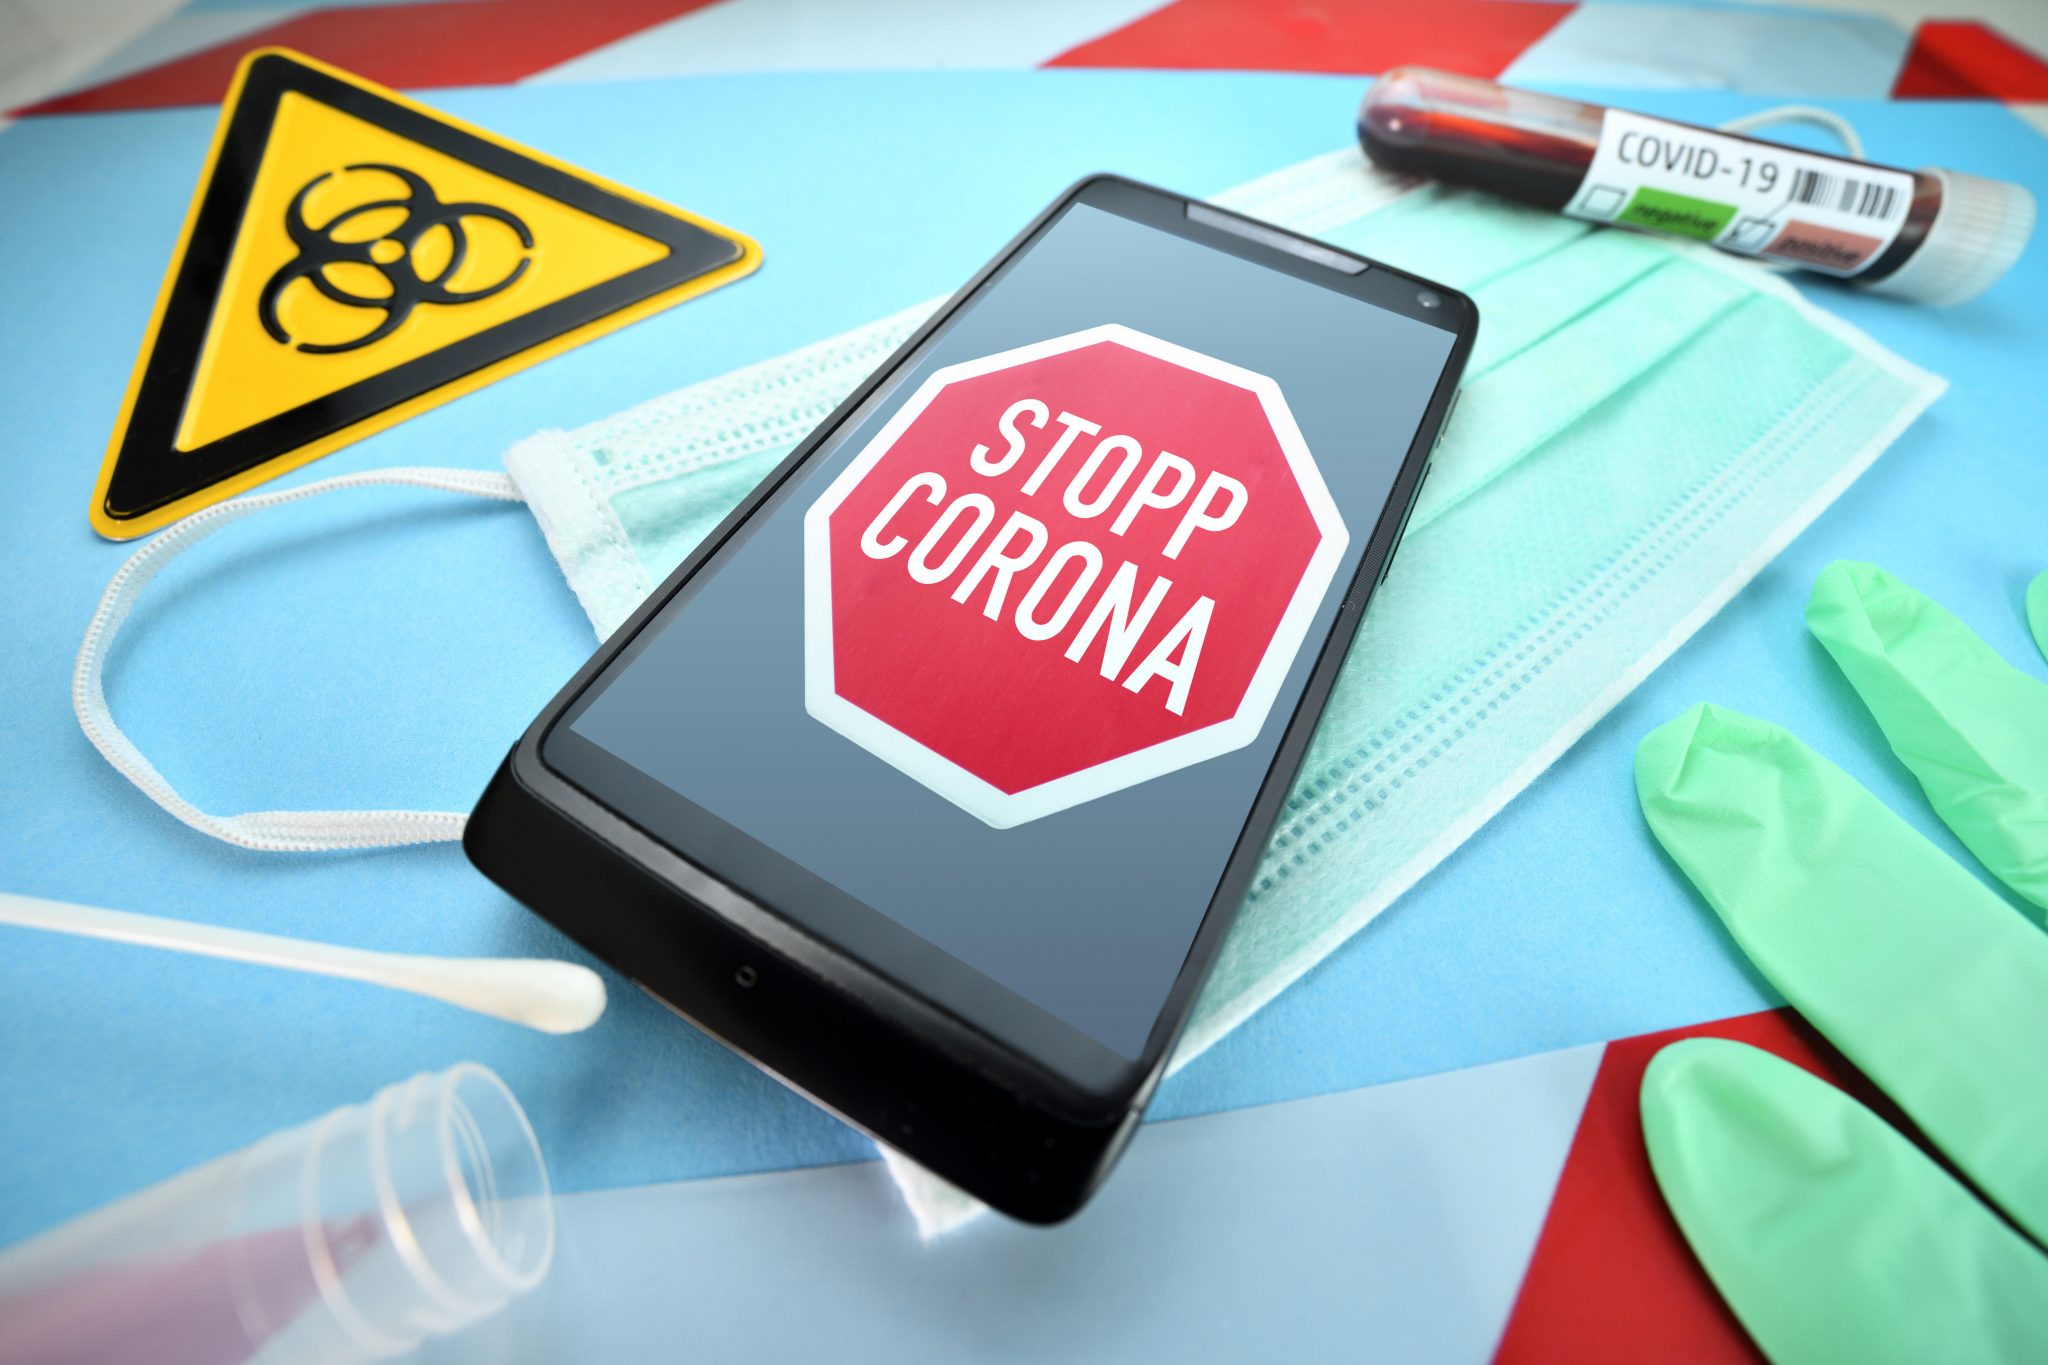 Die Corona-Warn-App wirft Fragen auf (Symbolbild) Foto: picture alliance/Bildagentur-online